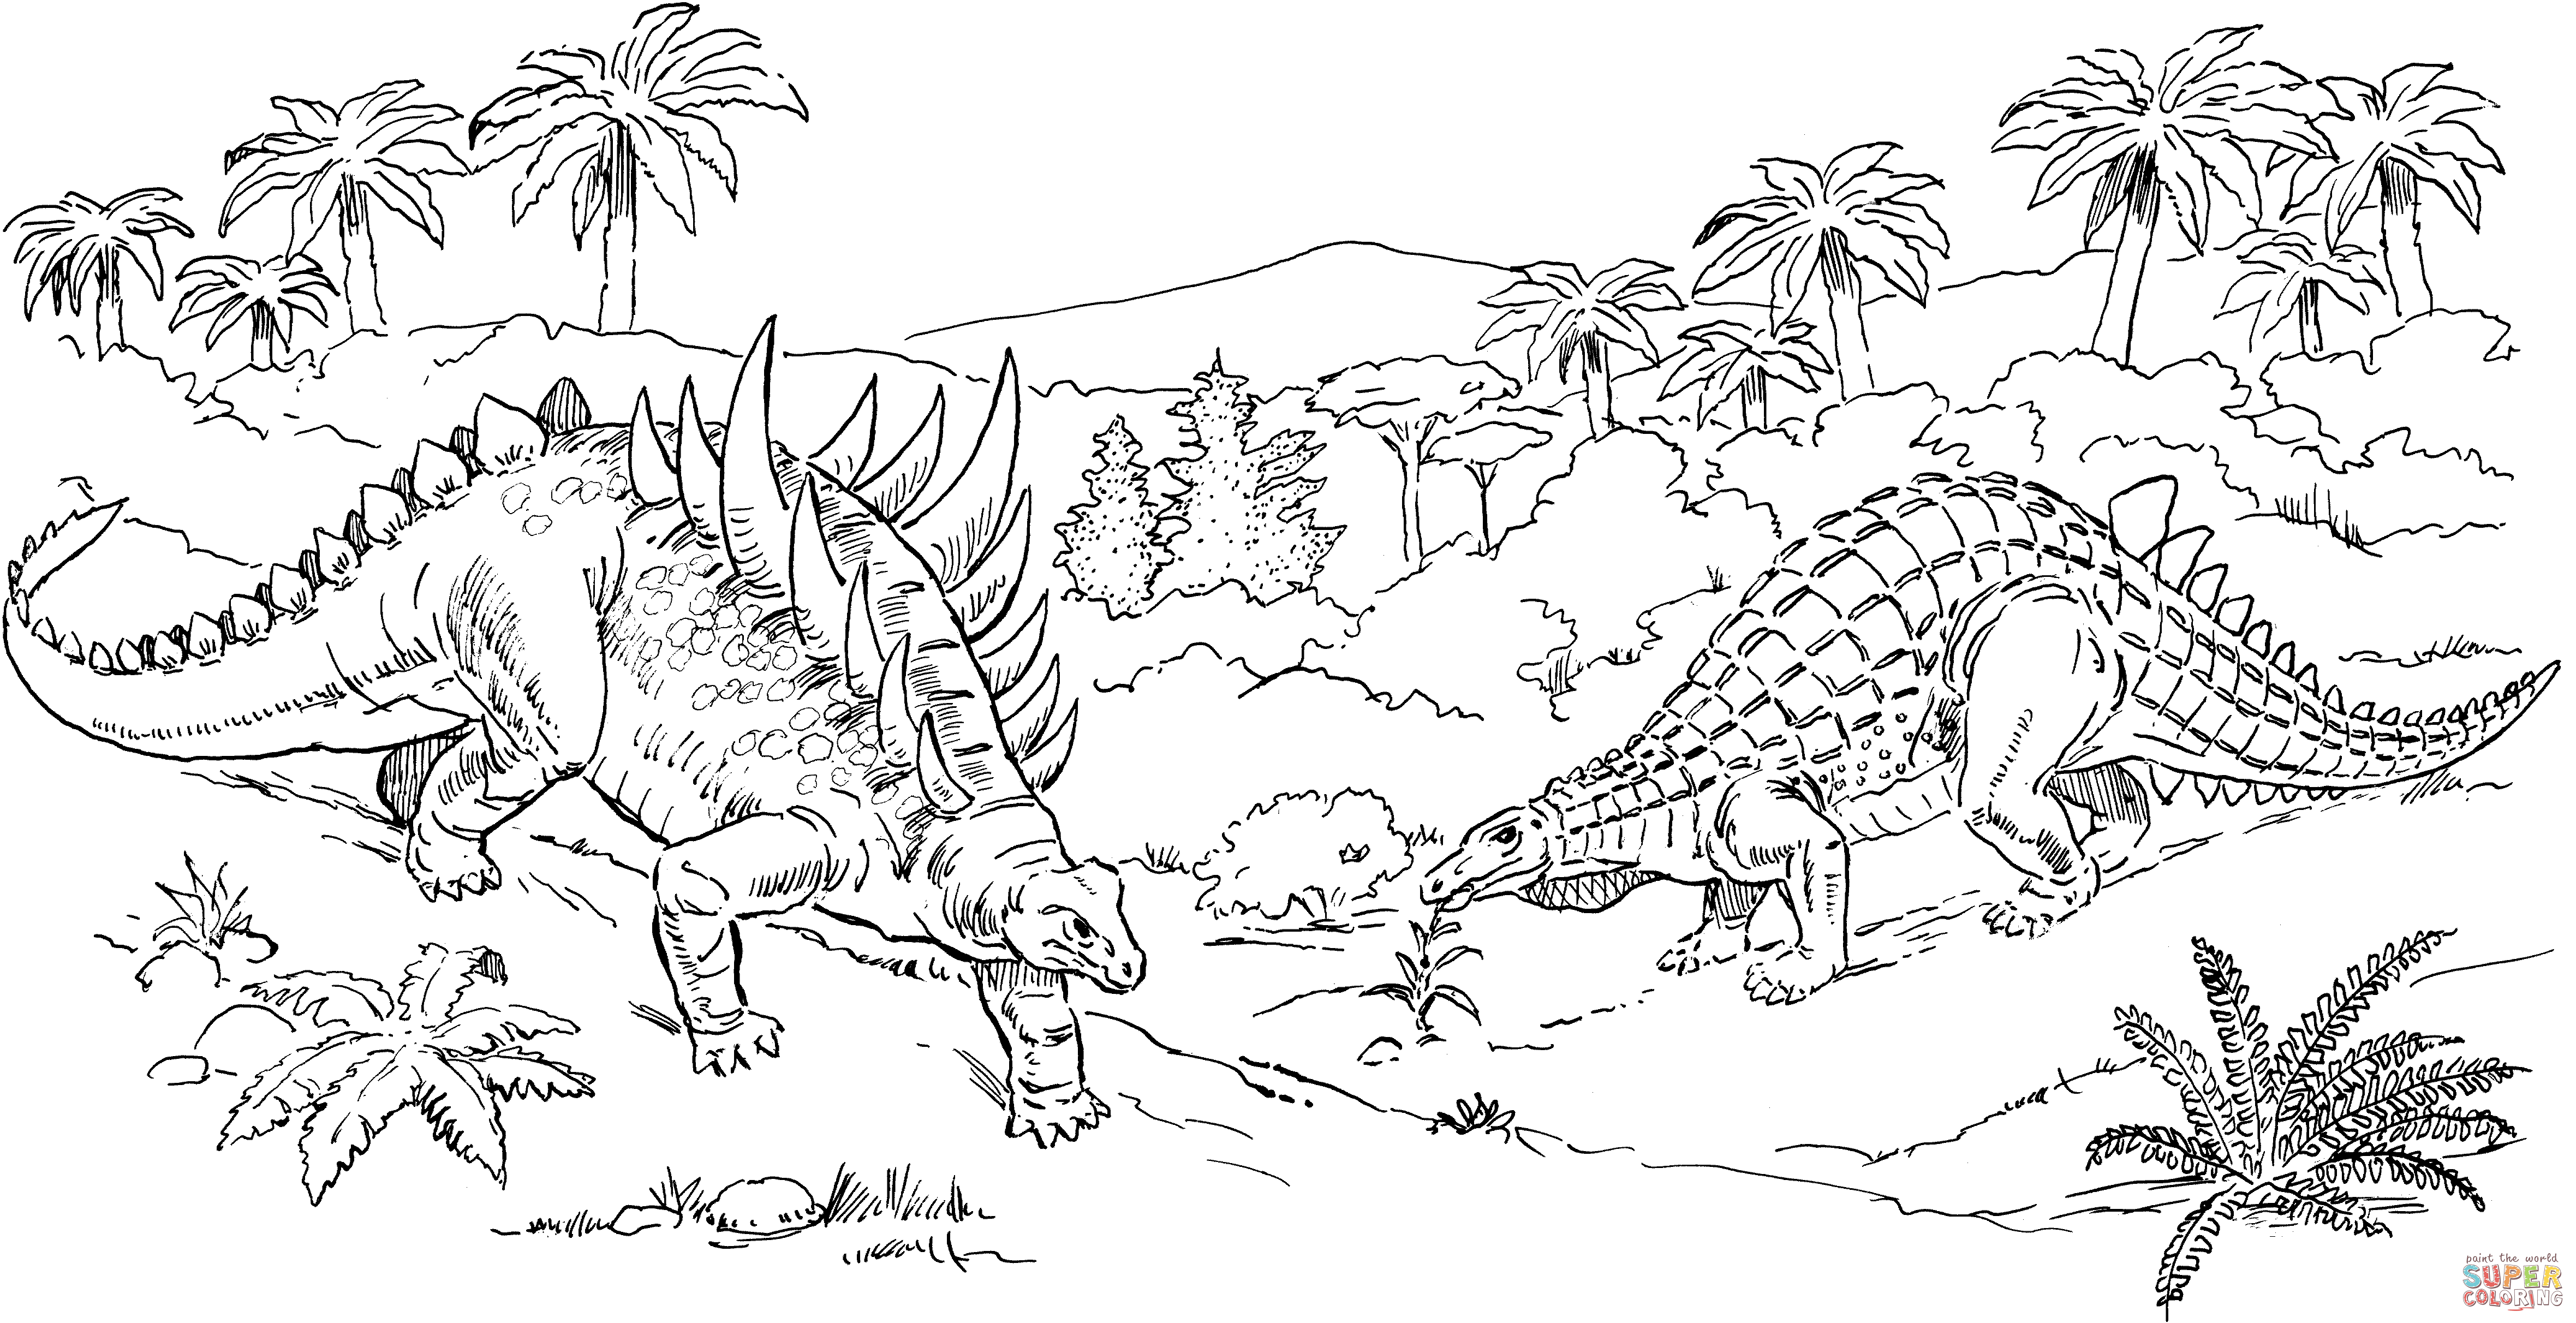 Полакантус  Раскраски с динозаврами полакантусам